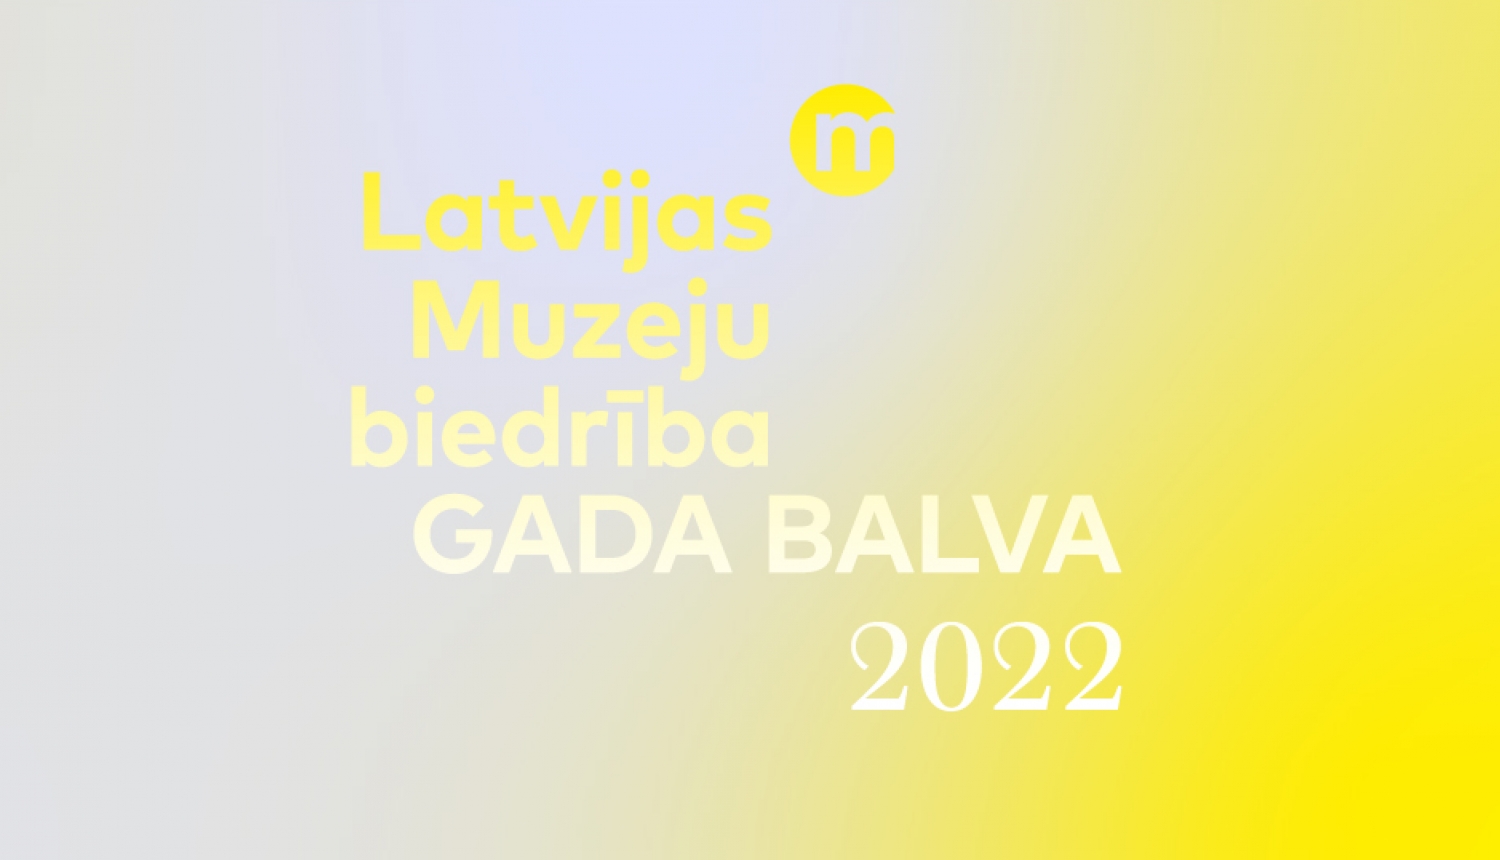 Latvijas Muzeju biedrības Gada balvas 2022 vizuālais materiāls